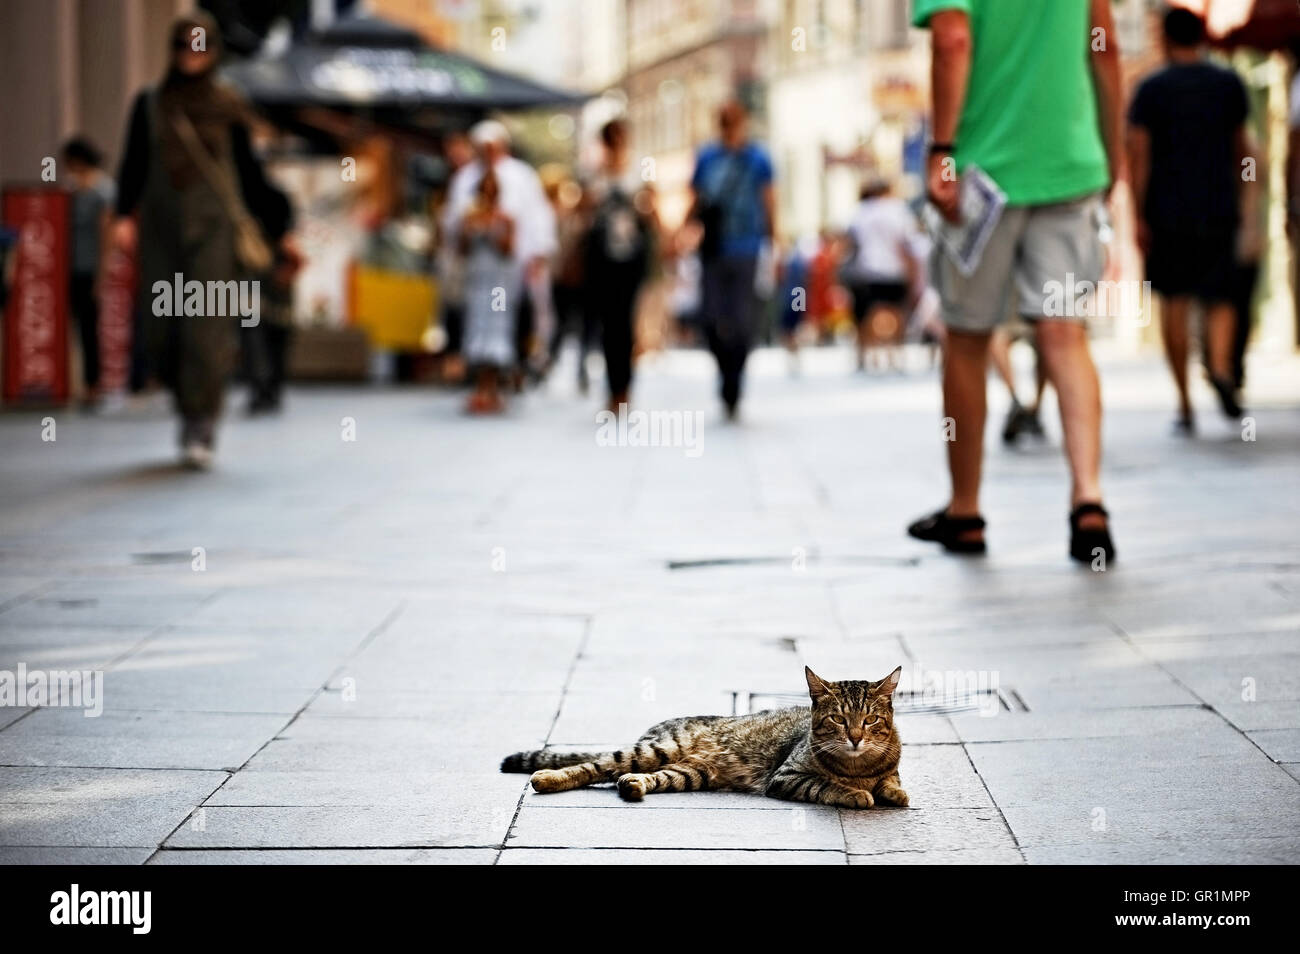 Katze in einer verkehrsberuhigten Straße mit Passanten durch Festlegung Stockfoto